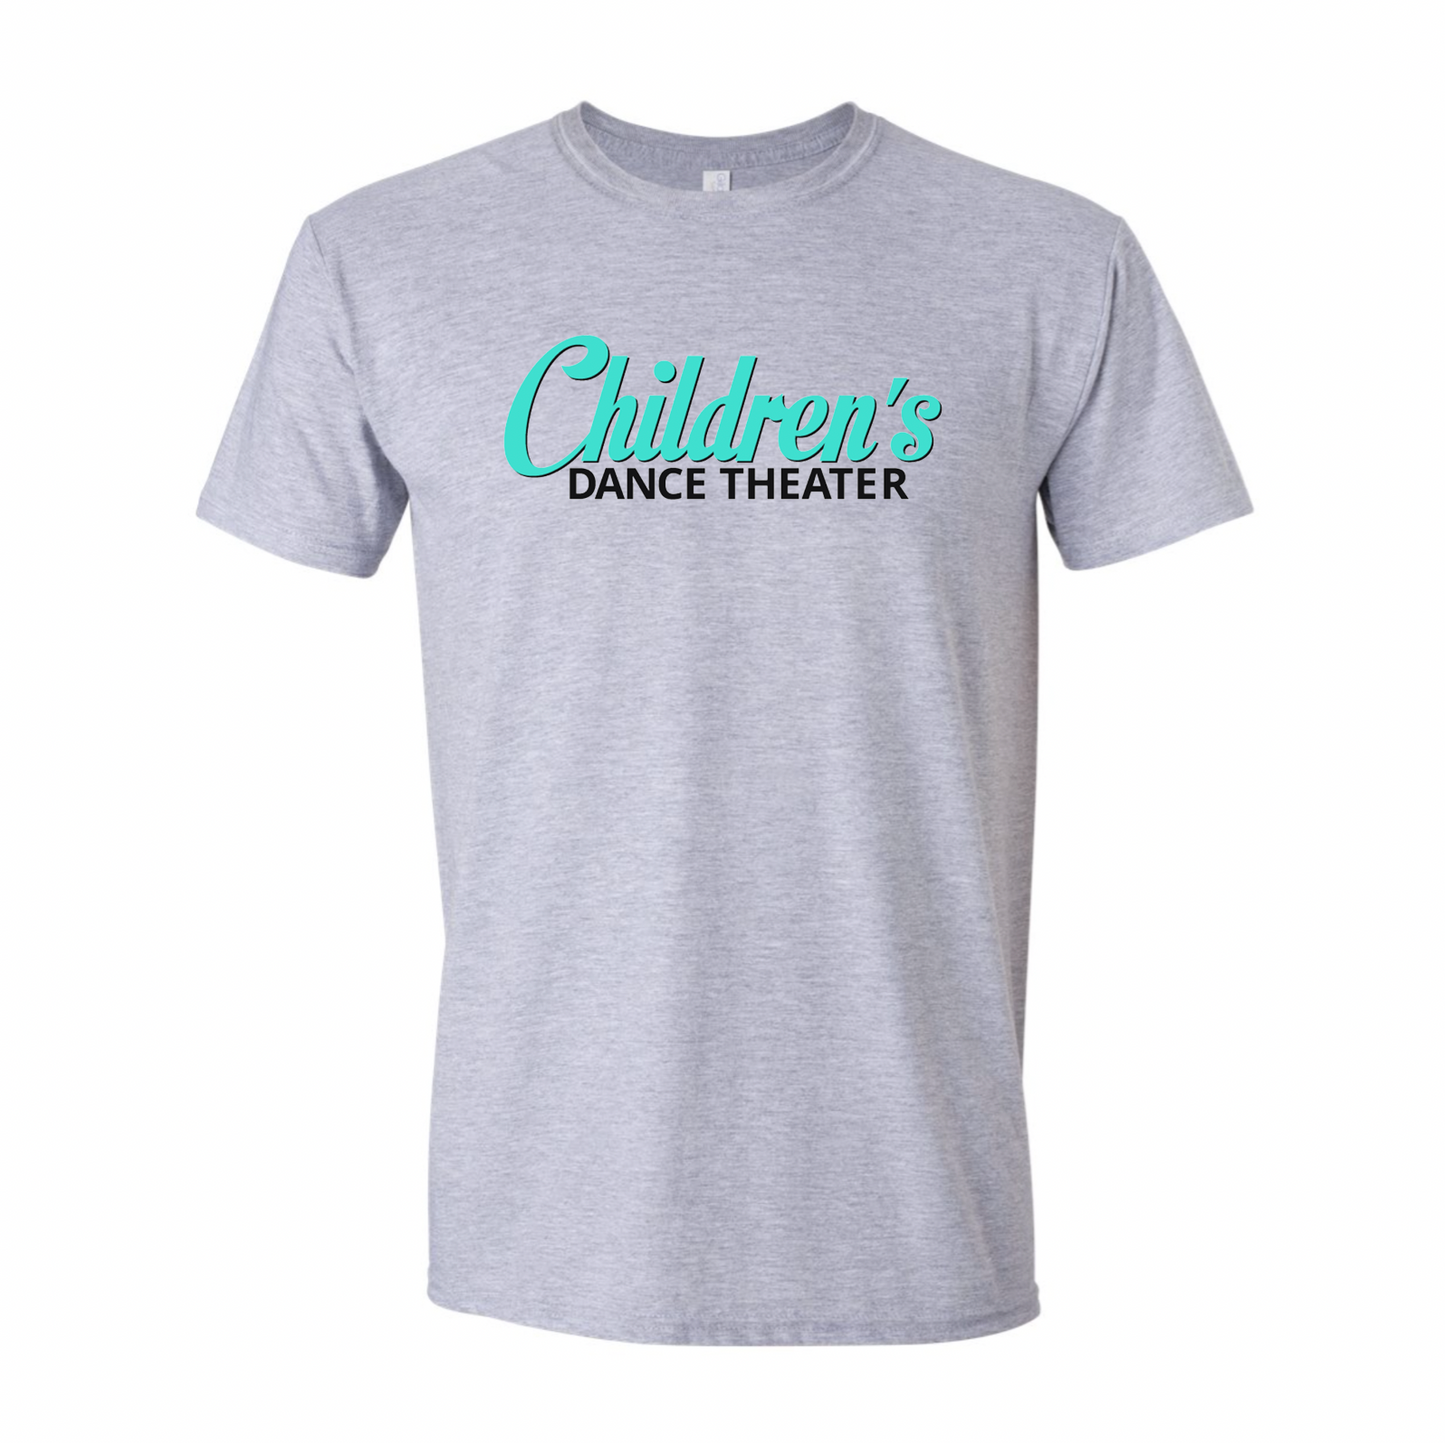 Children's Dance Theater T-shirt